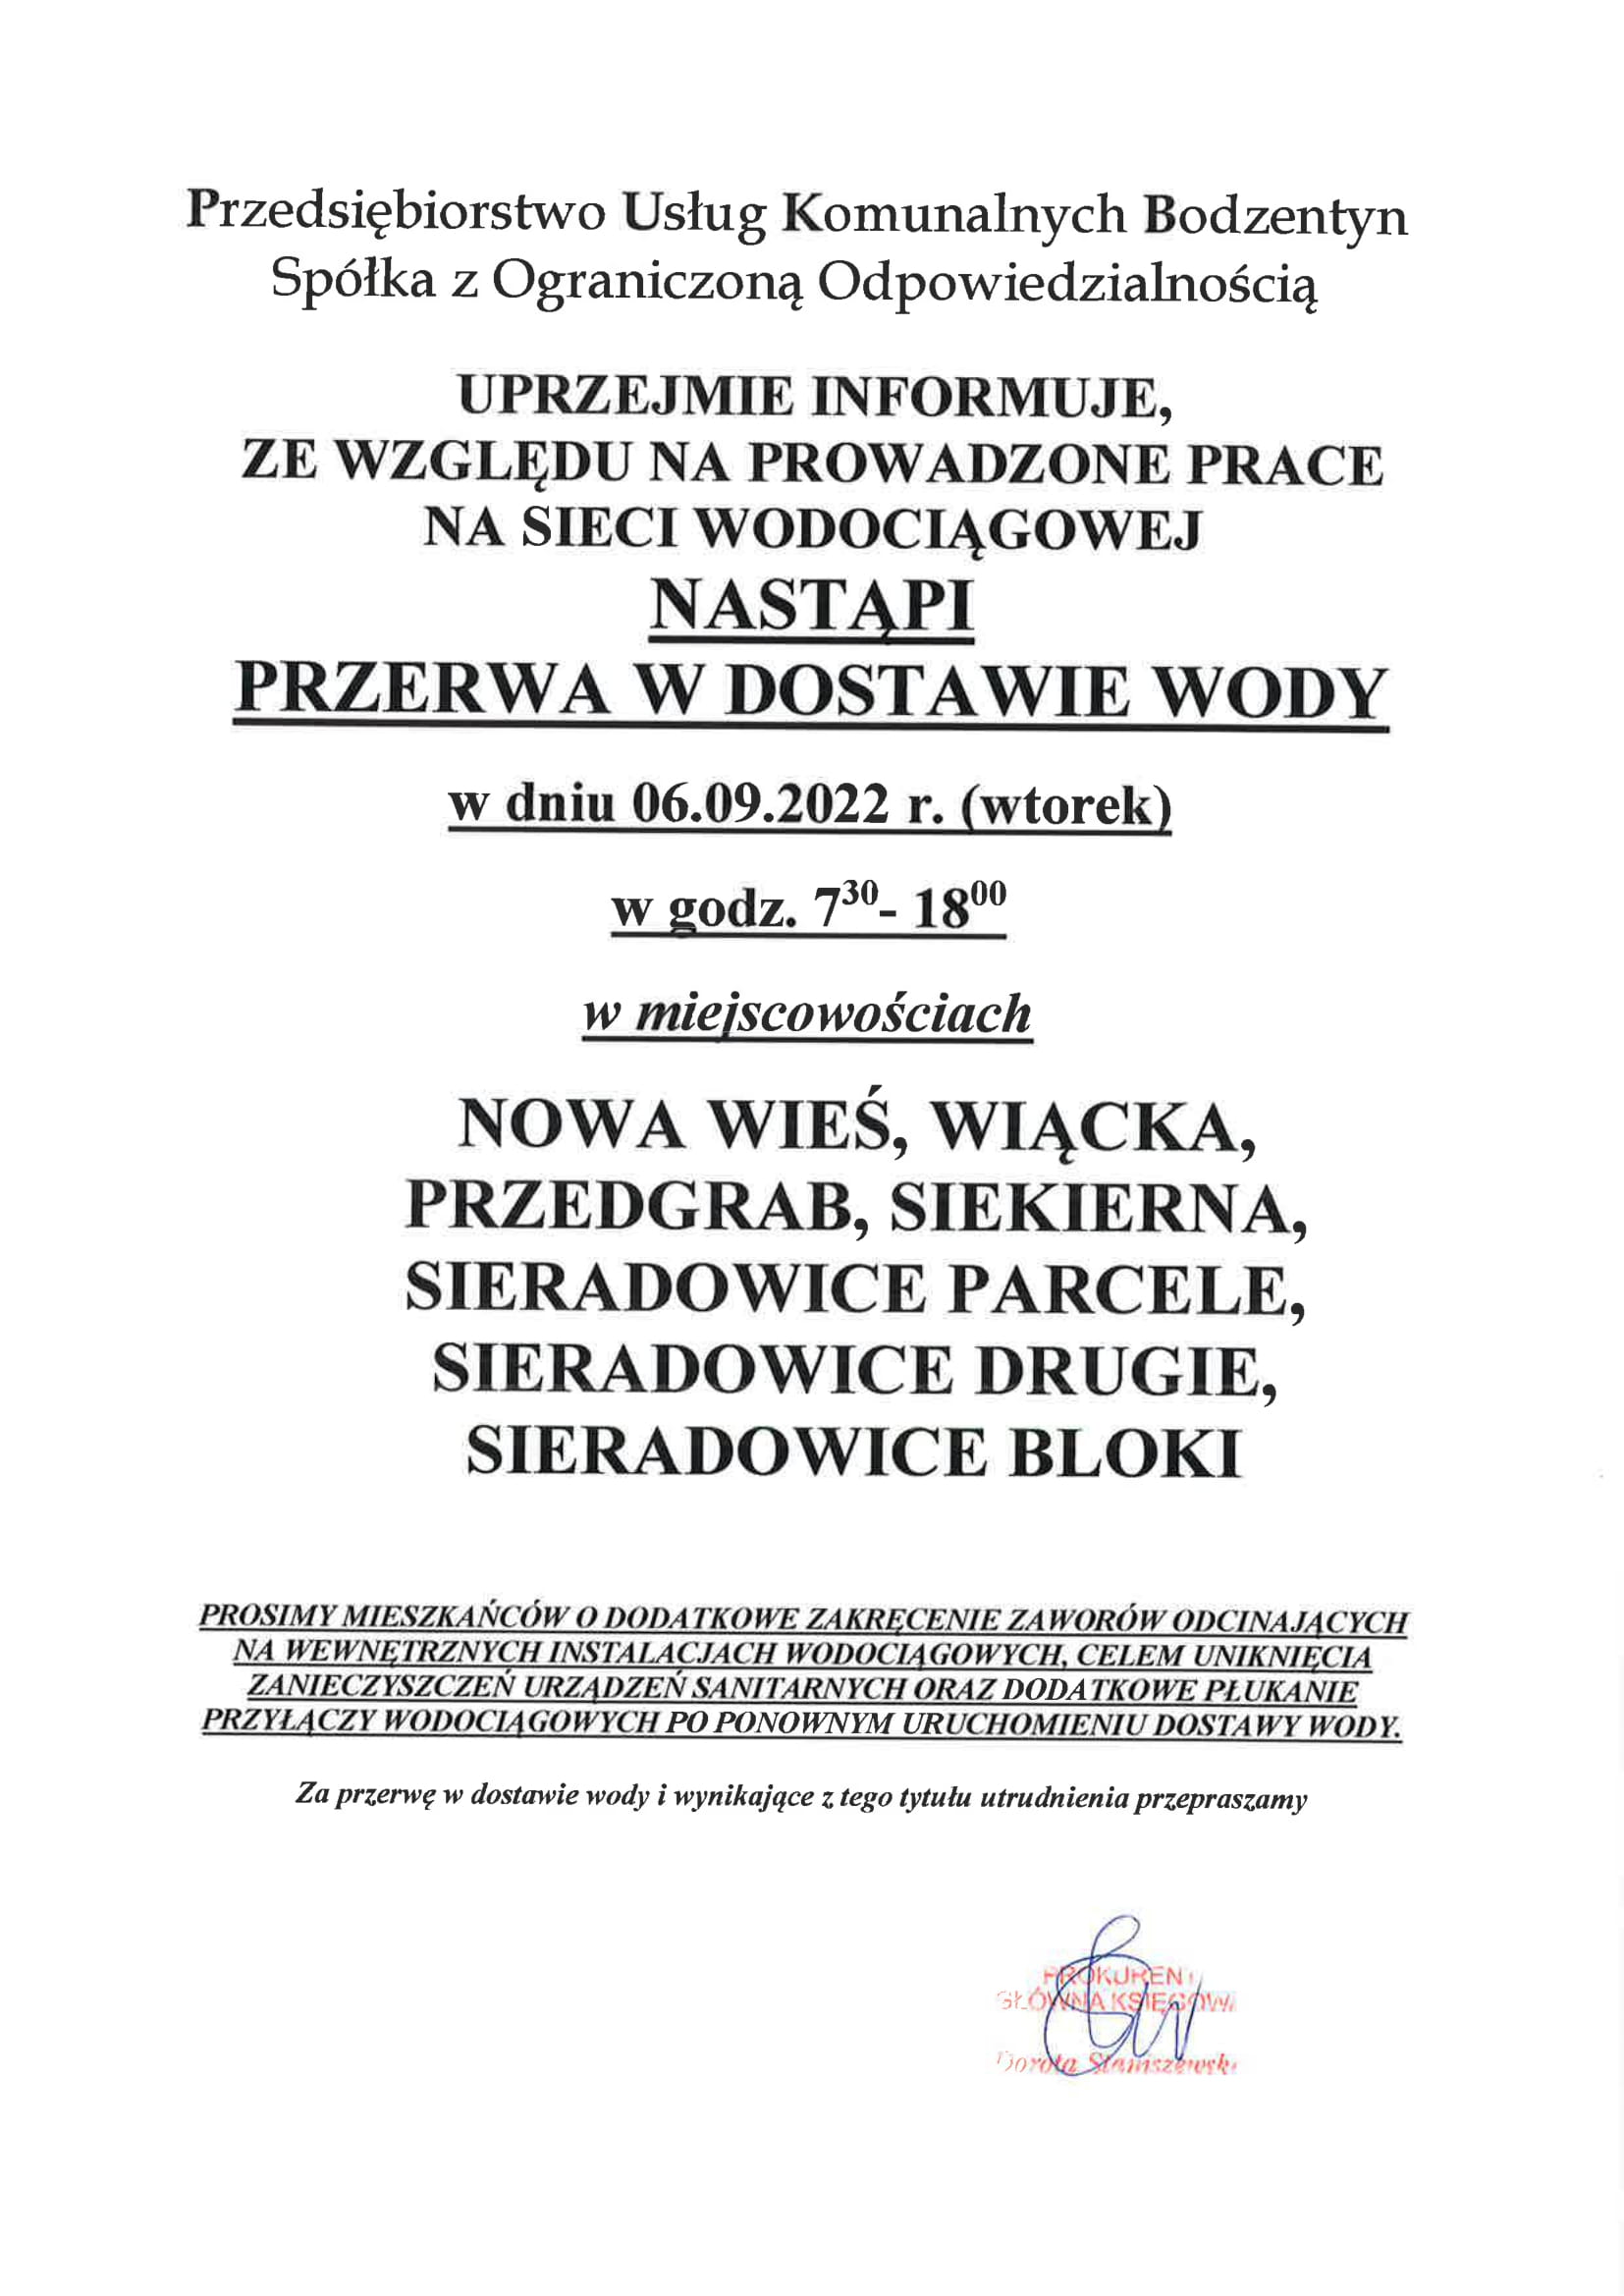 OGOSZENIE zamknicie wody 2022 09 06 Nowa Wie Wicka Przedgrab Siekierna Sieradowice 1